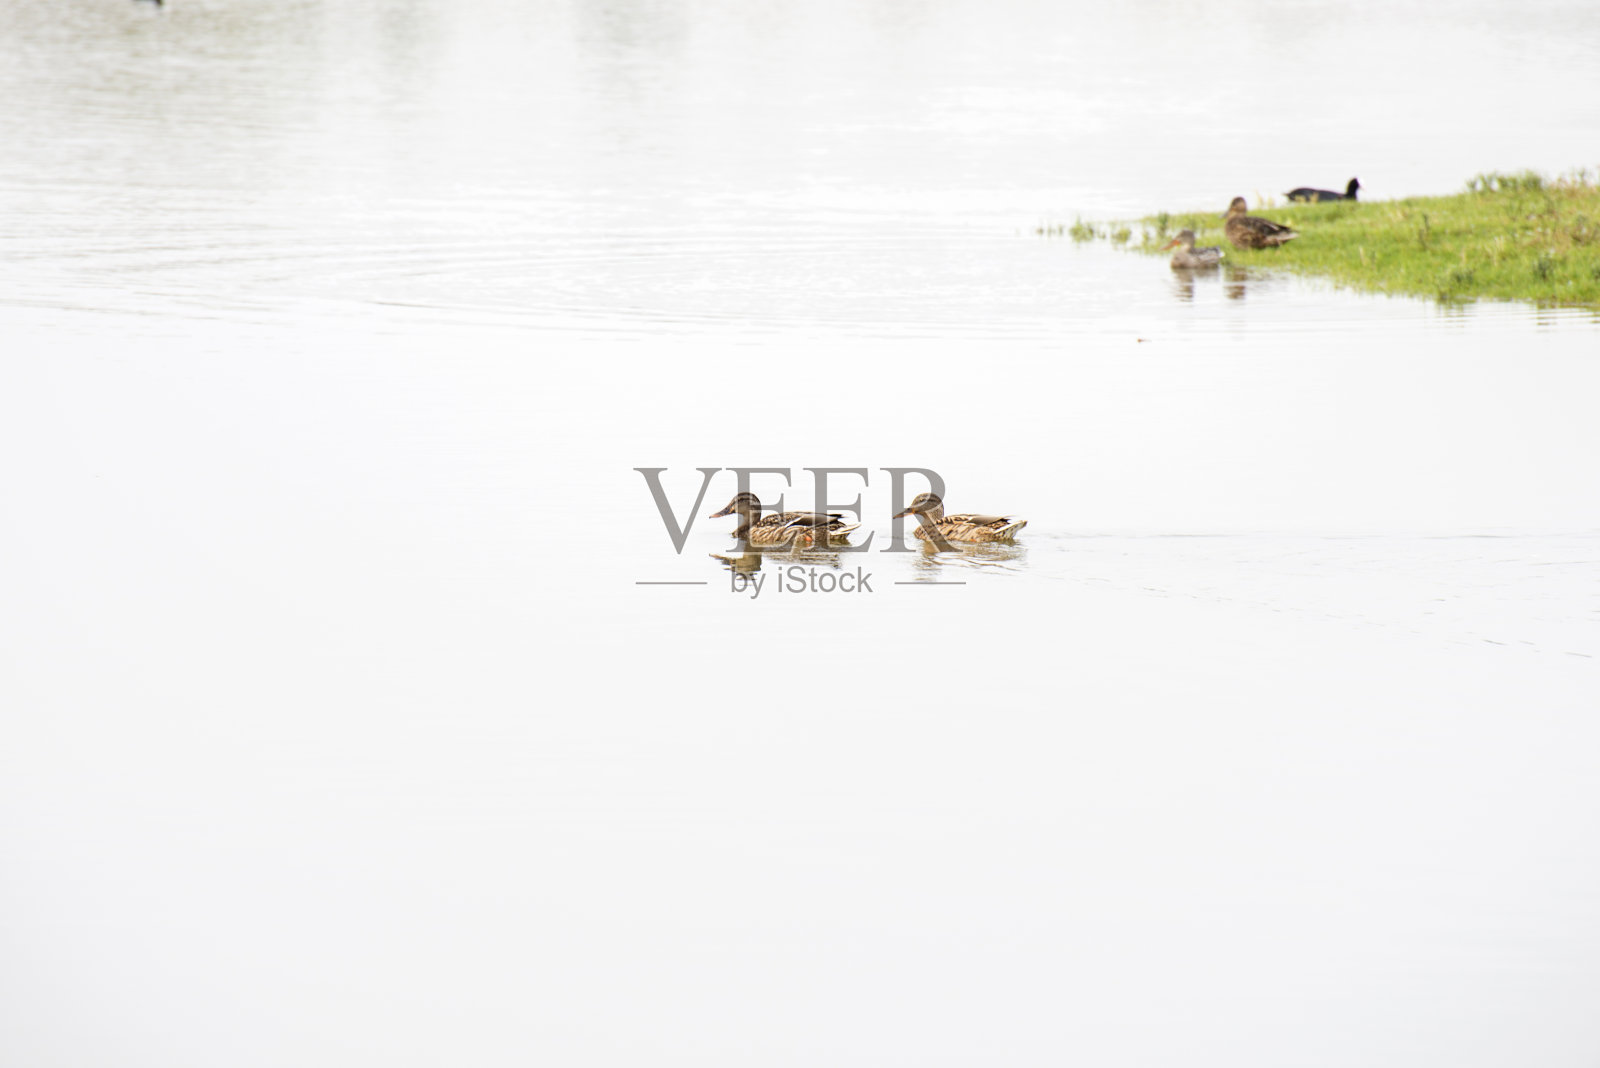 野鸭在湖里游泳照片摄影图片